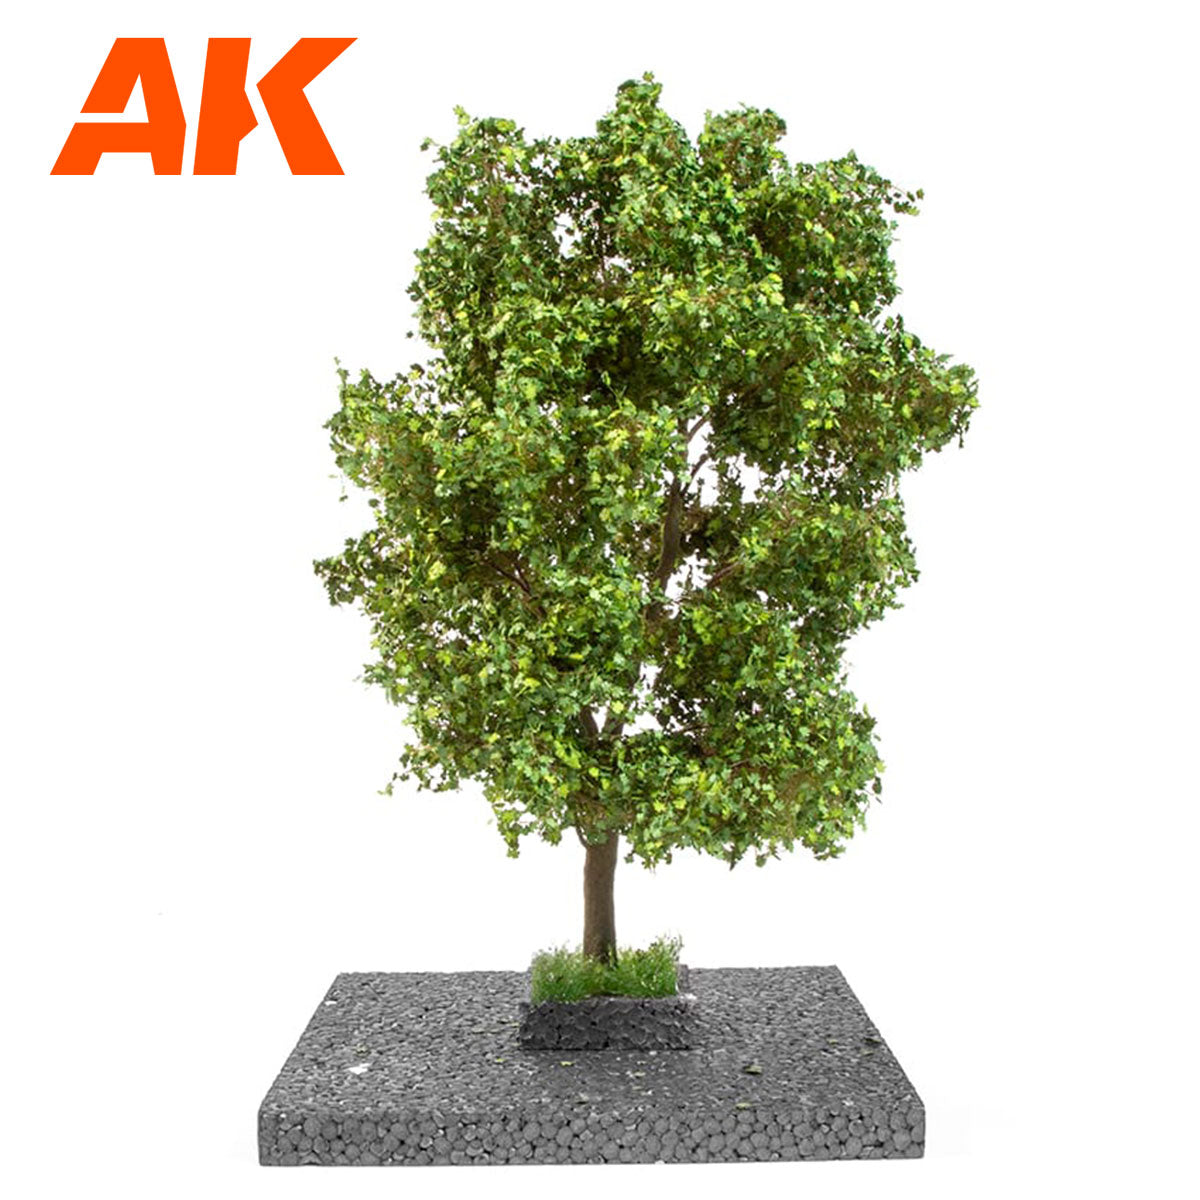 AK8189 - Maple Tree 1/35